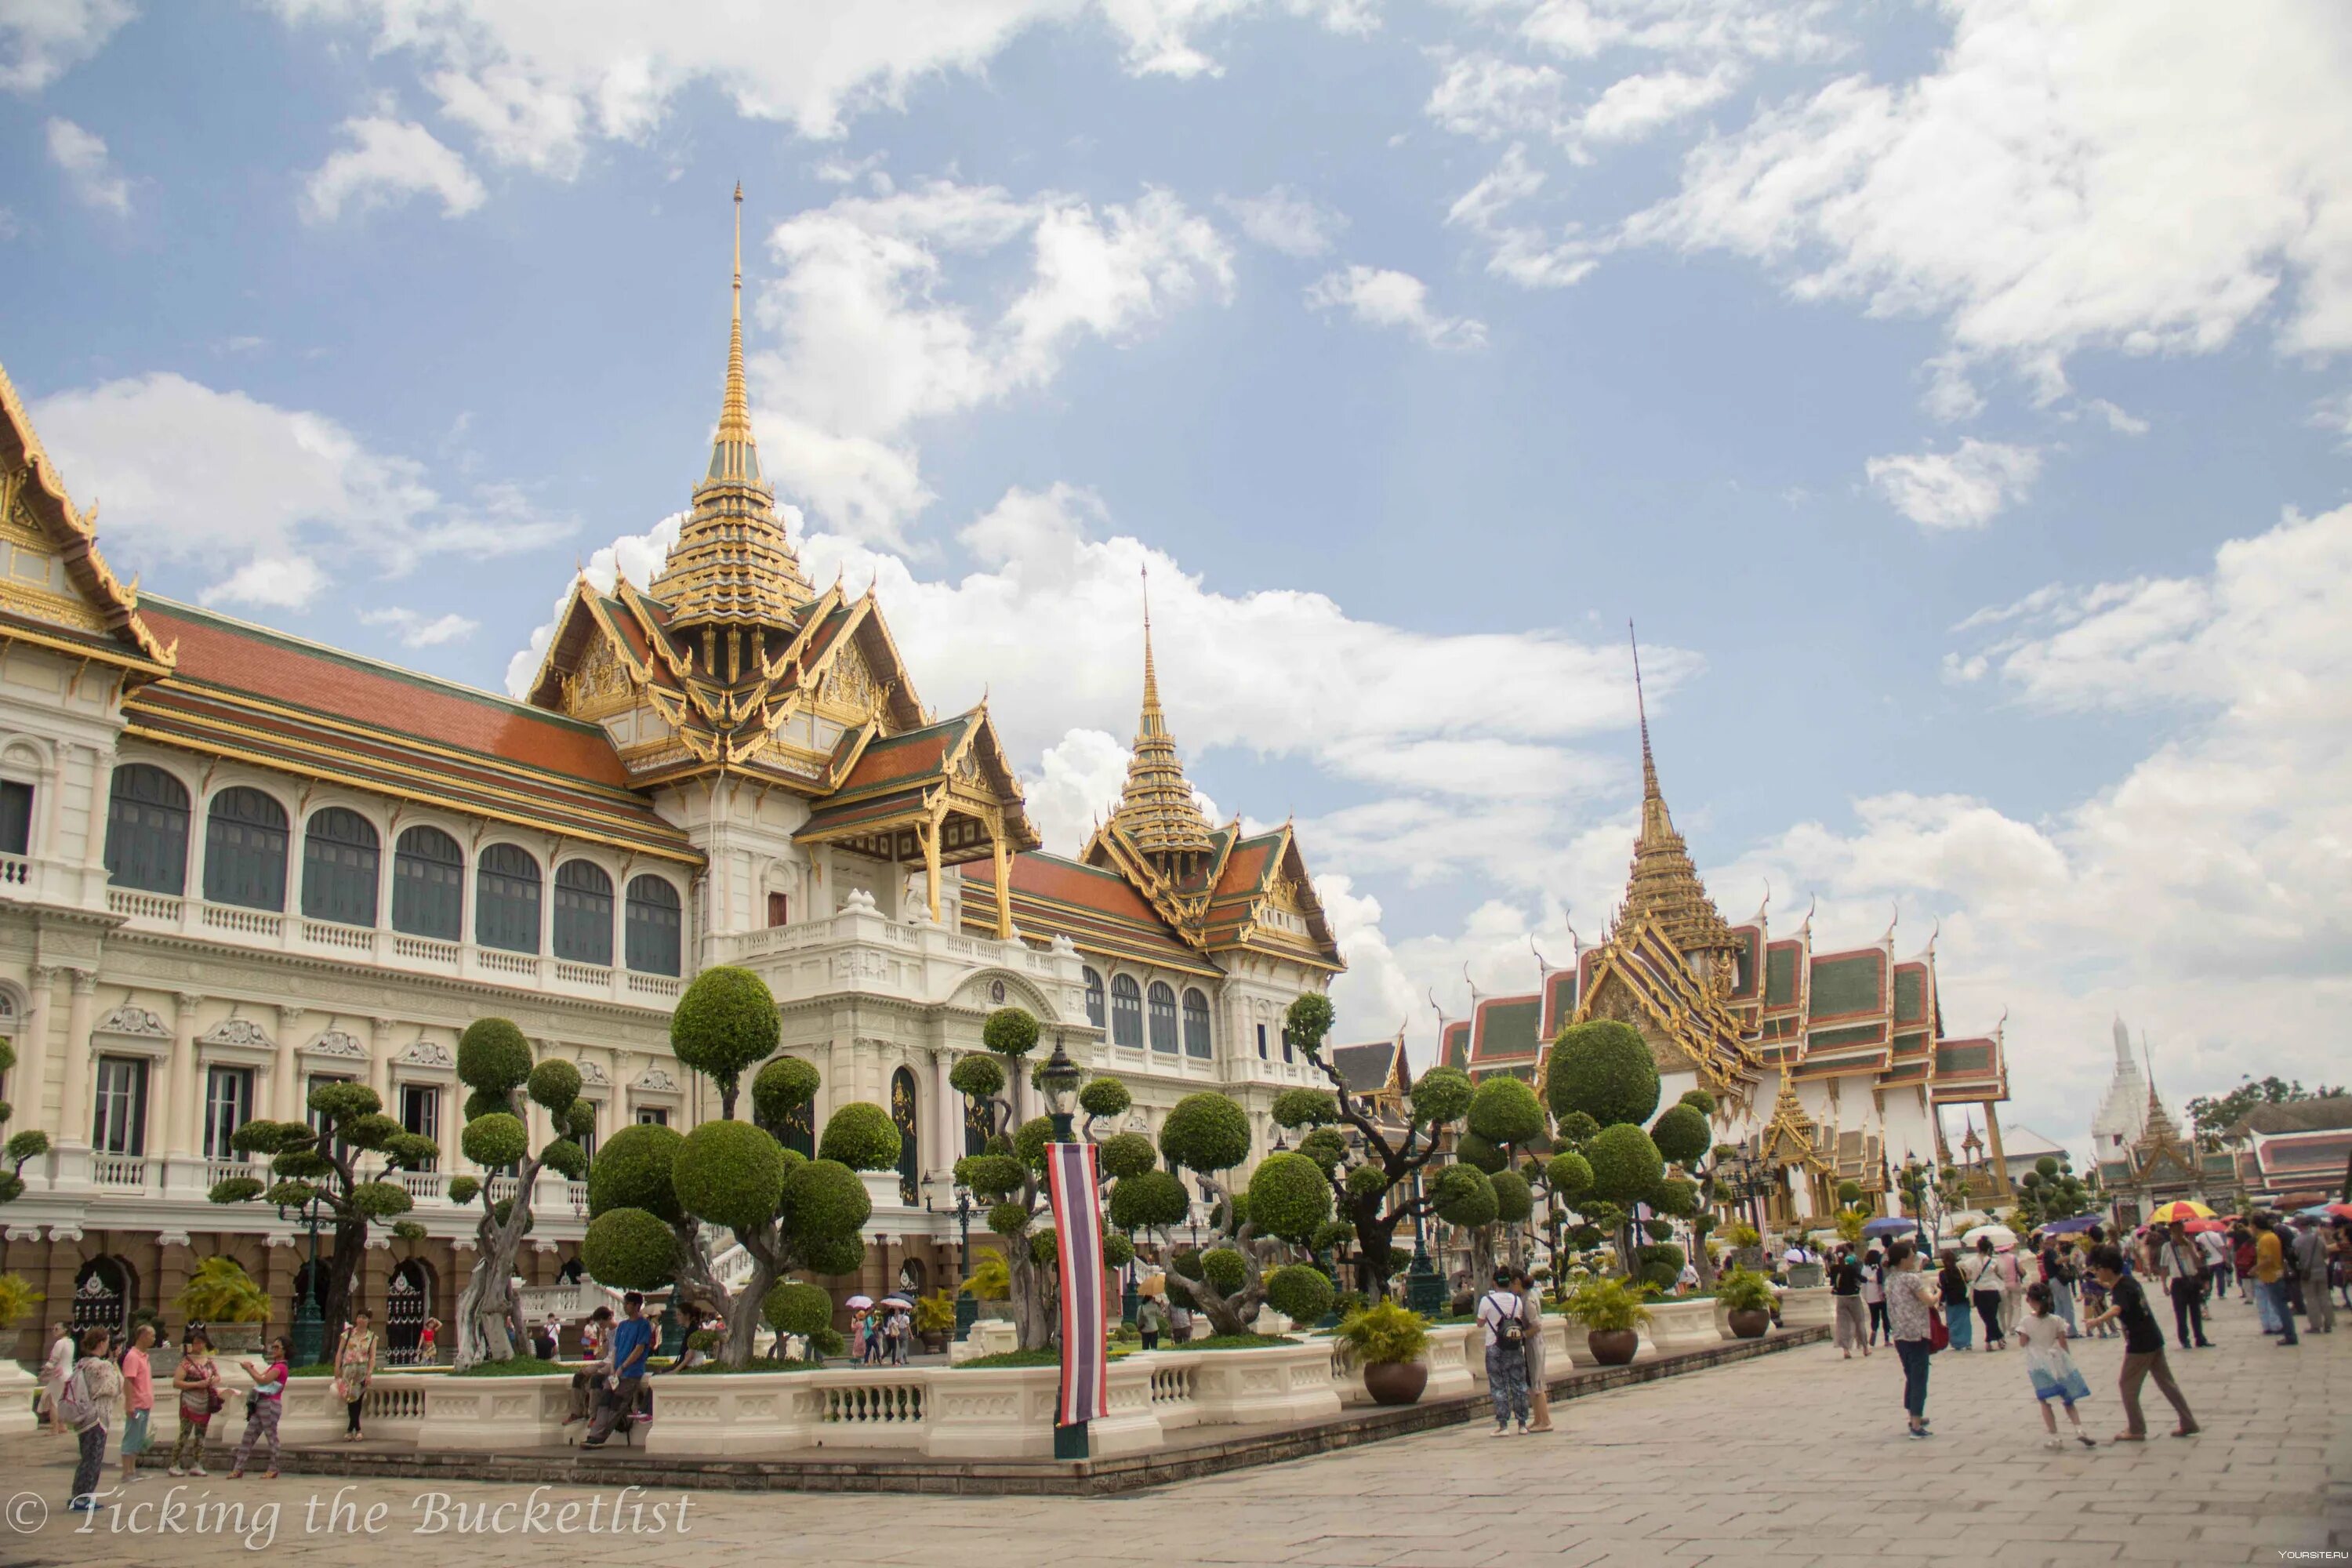 Площадь бангкока. Королевский дворец в Бангкоке. Столица Тайланда. Бангкок столица Таиланда. Королевский дворец — резиденция тайского короля Бангкок.